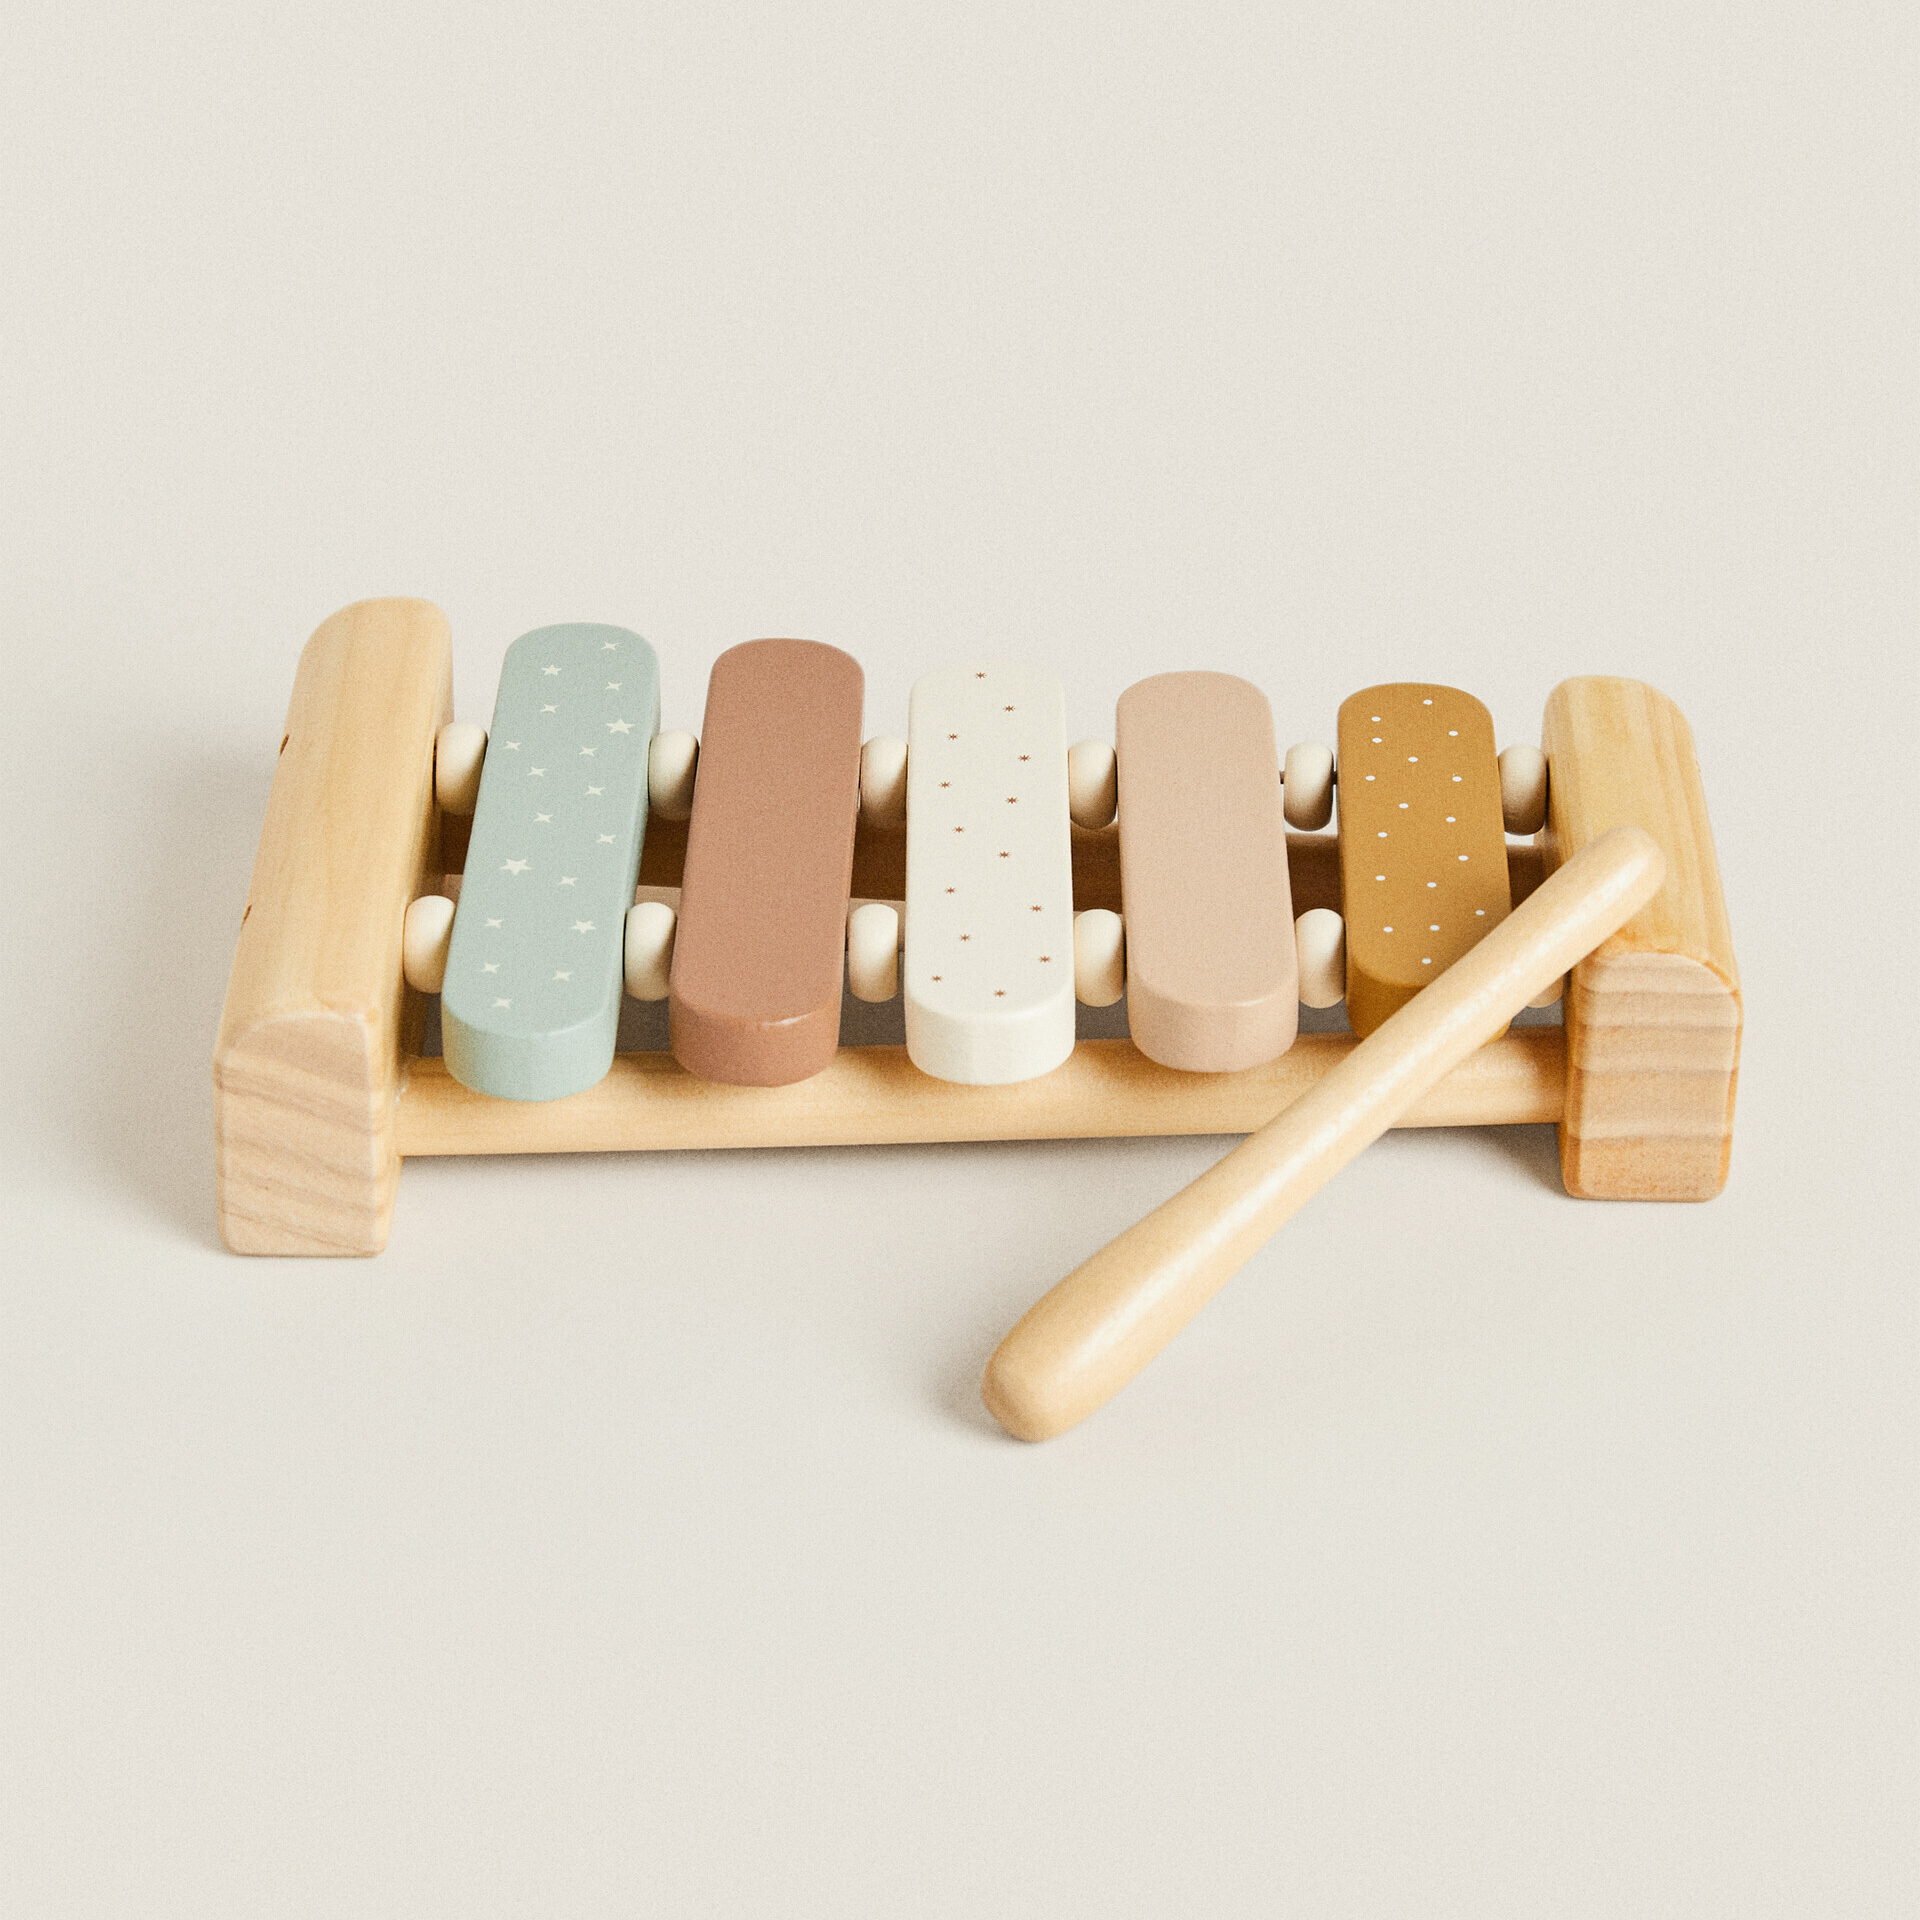 Детская музыкальная игрушка-ксилофон Zara Home, дерево детский деревянный ксилофон музыкальный инструмент детская игрушка со звуком веселая игрушка для мальчиков подарок развивающая игрушк